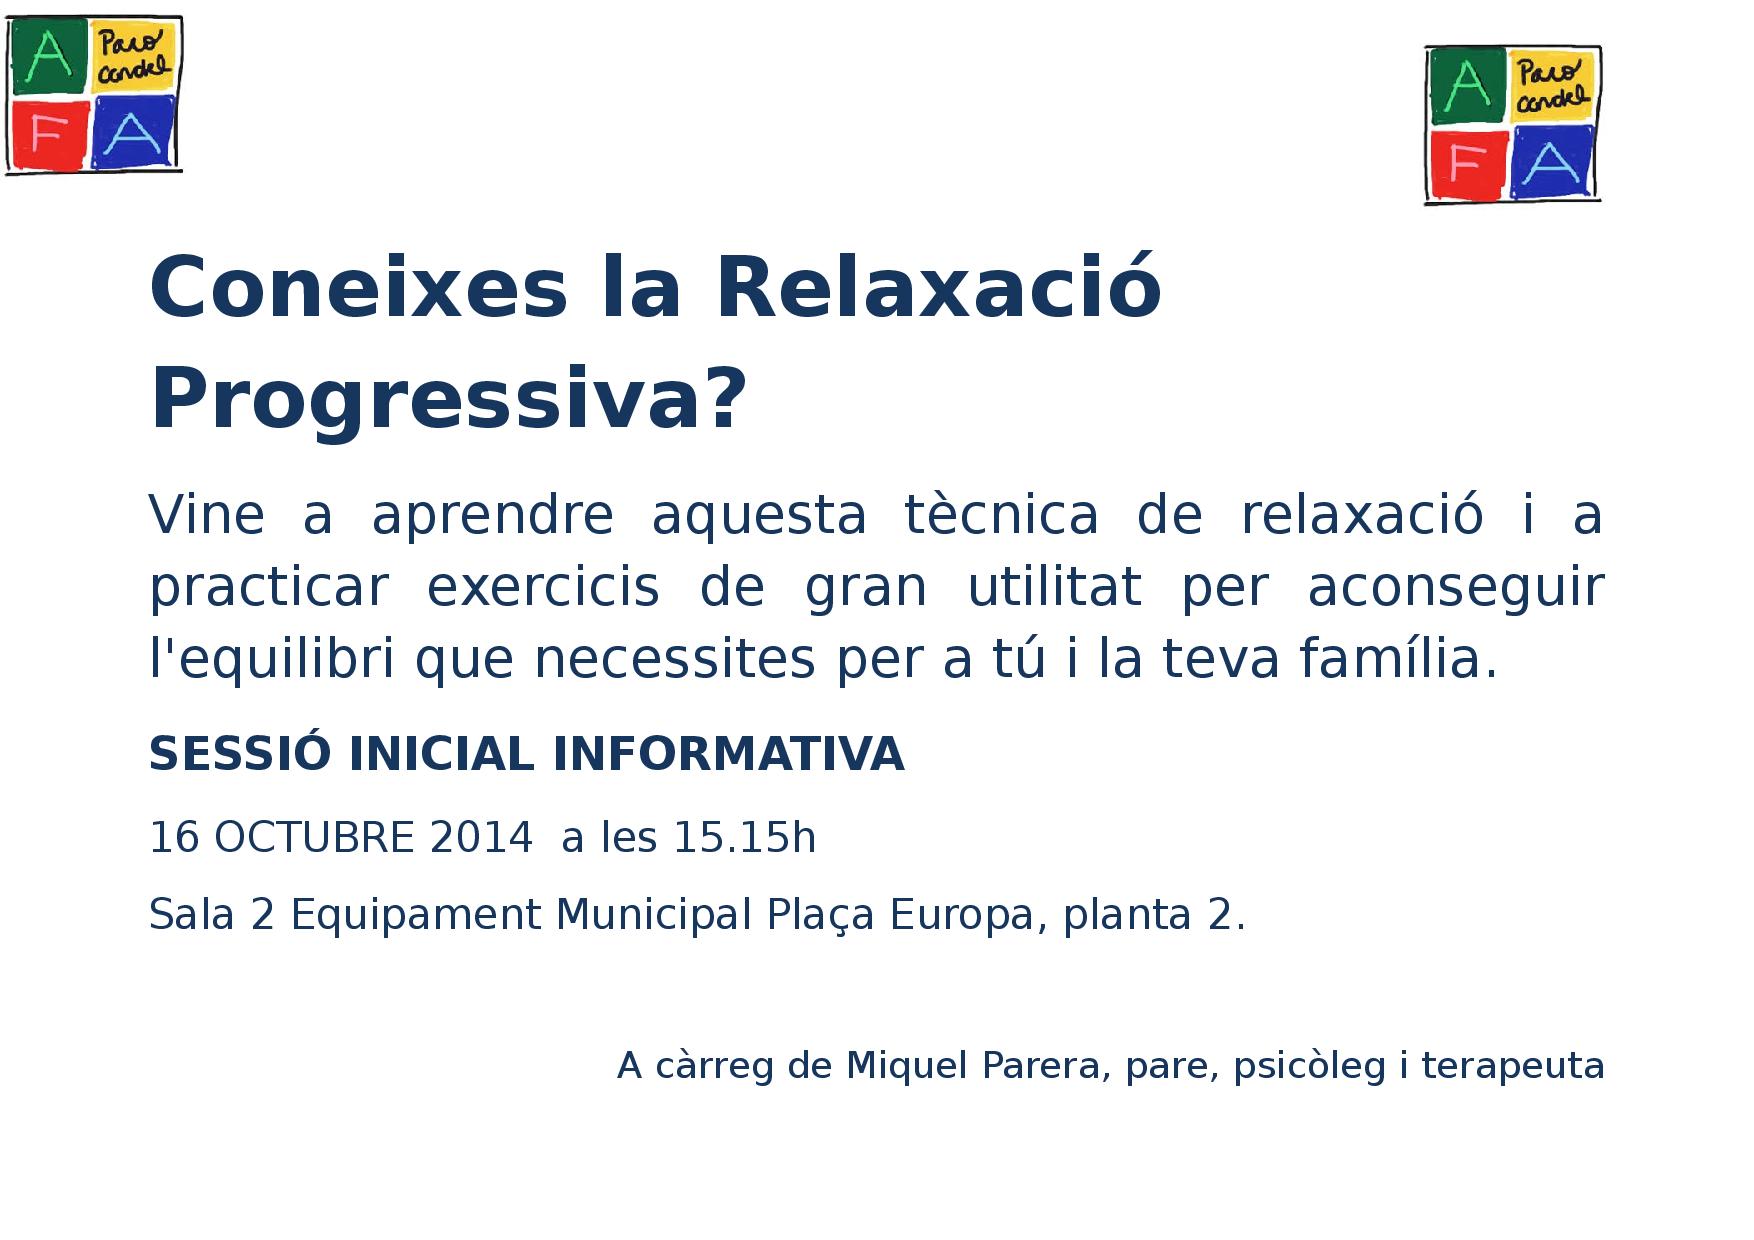 Coneixes Relaxacio-1-page-001